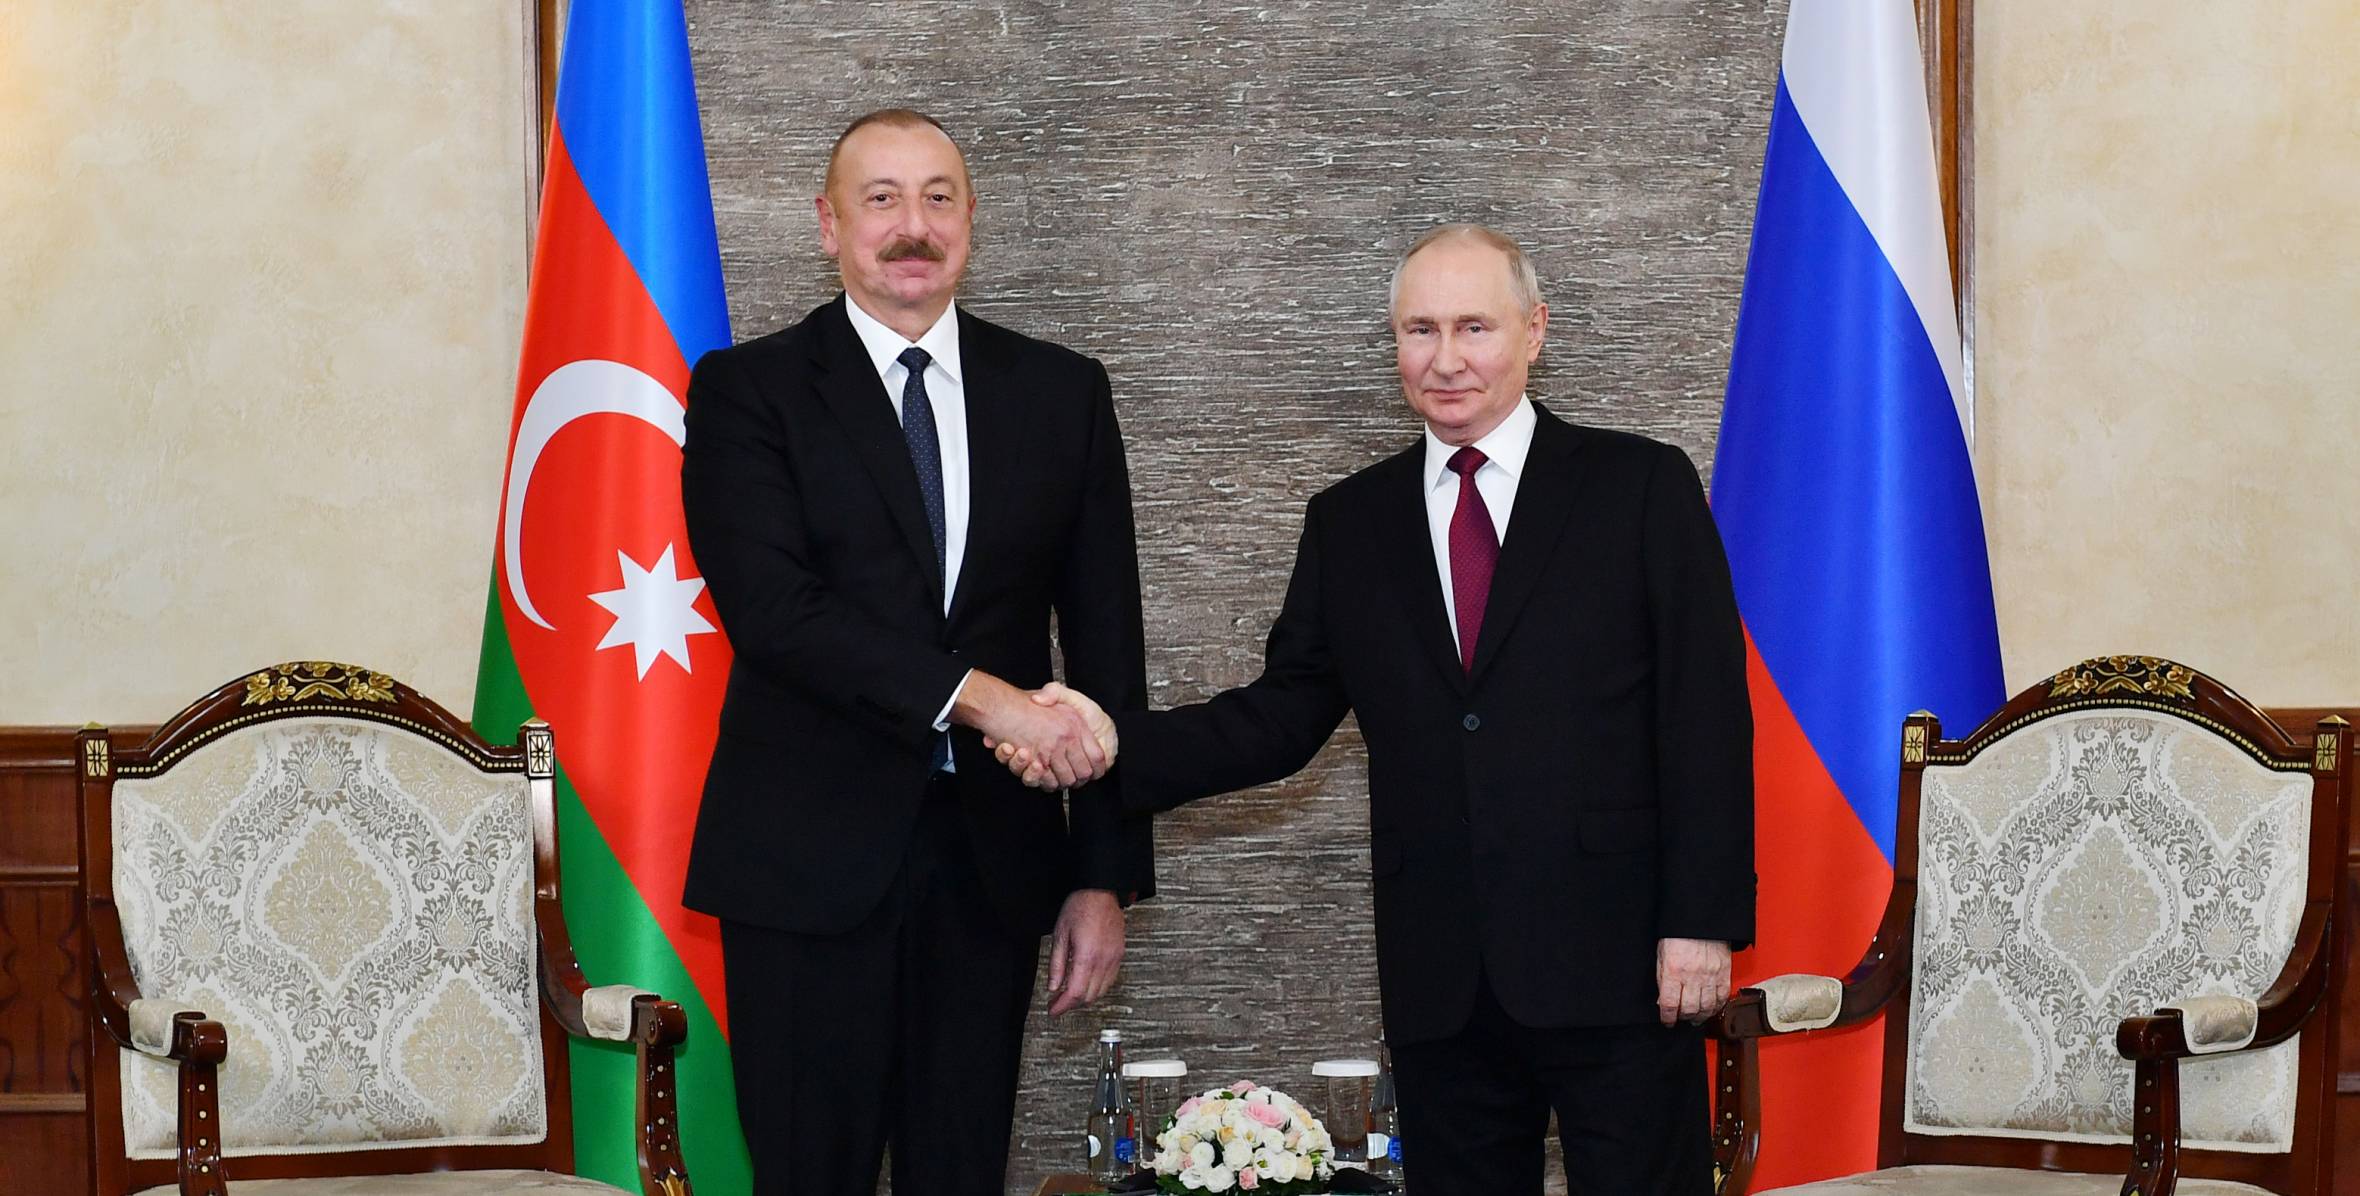 İlham Aliyev Bişkek'te Rusya Devlet Başkanı Vladimir Putin ile görüştü